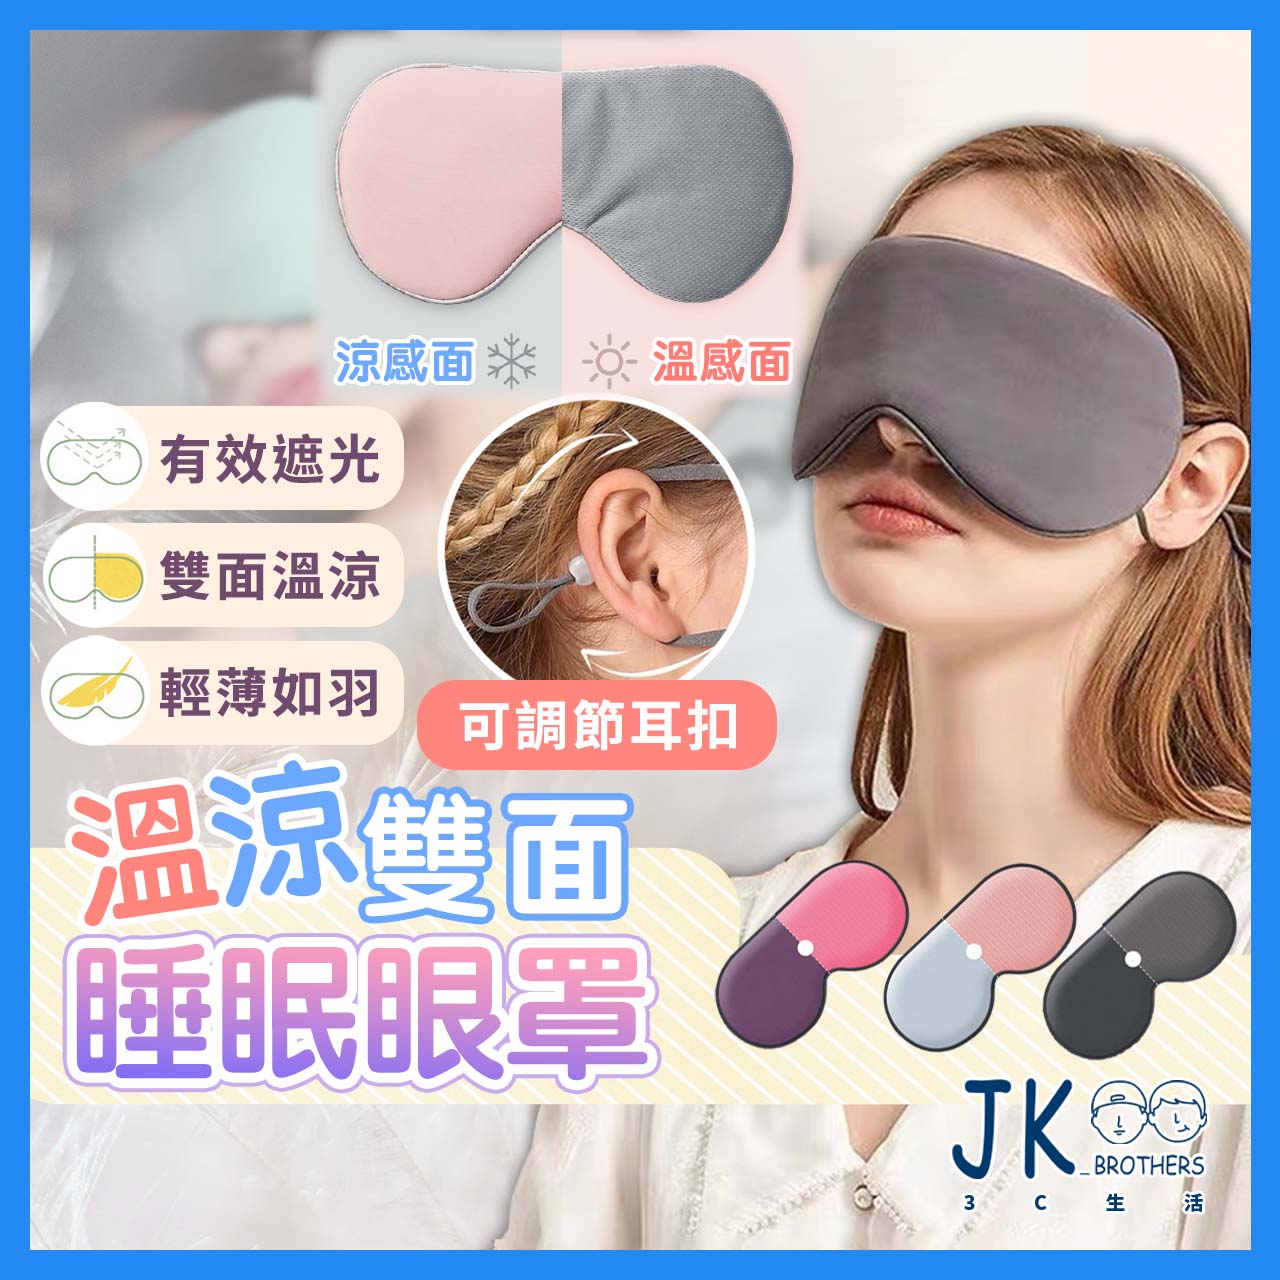 眼罩(4入組) 睡眠眼罩 3D眼罩 遮光眼罩雙面眼罩 溫涼睡眠眼罩 韓版 冰袋眼罩 遮光眼罩 可調式眼罩 旅行必備